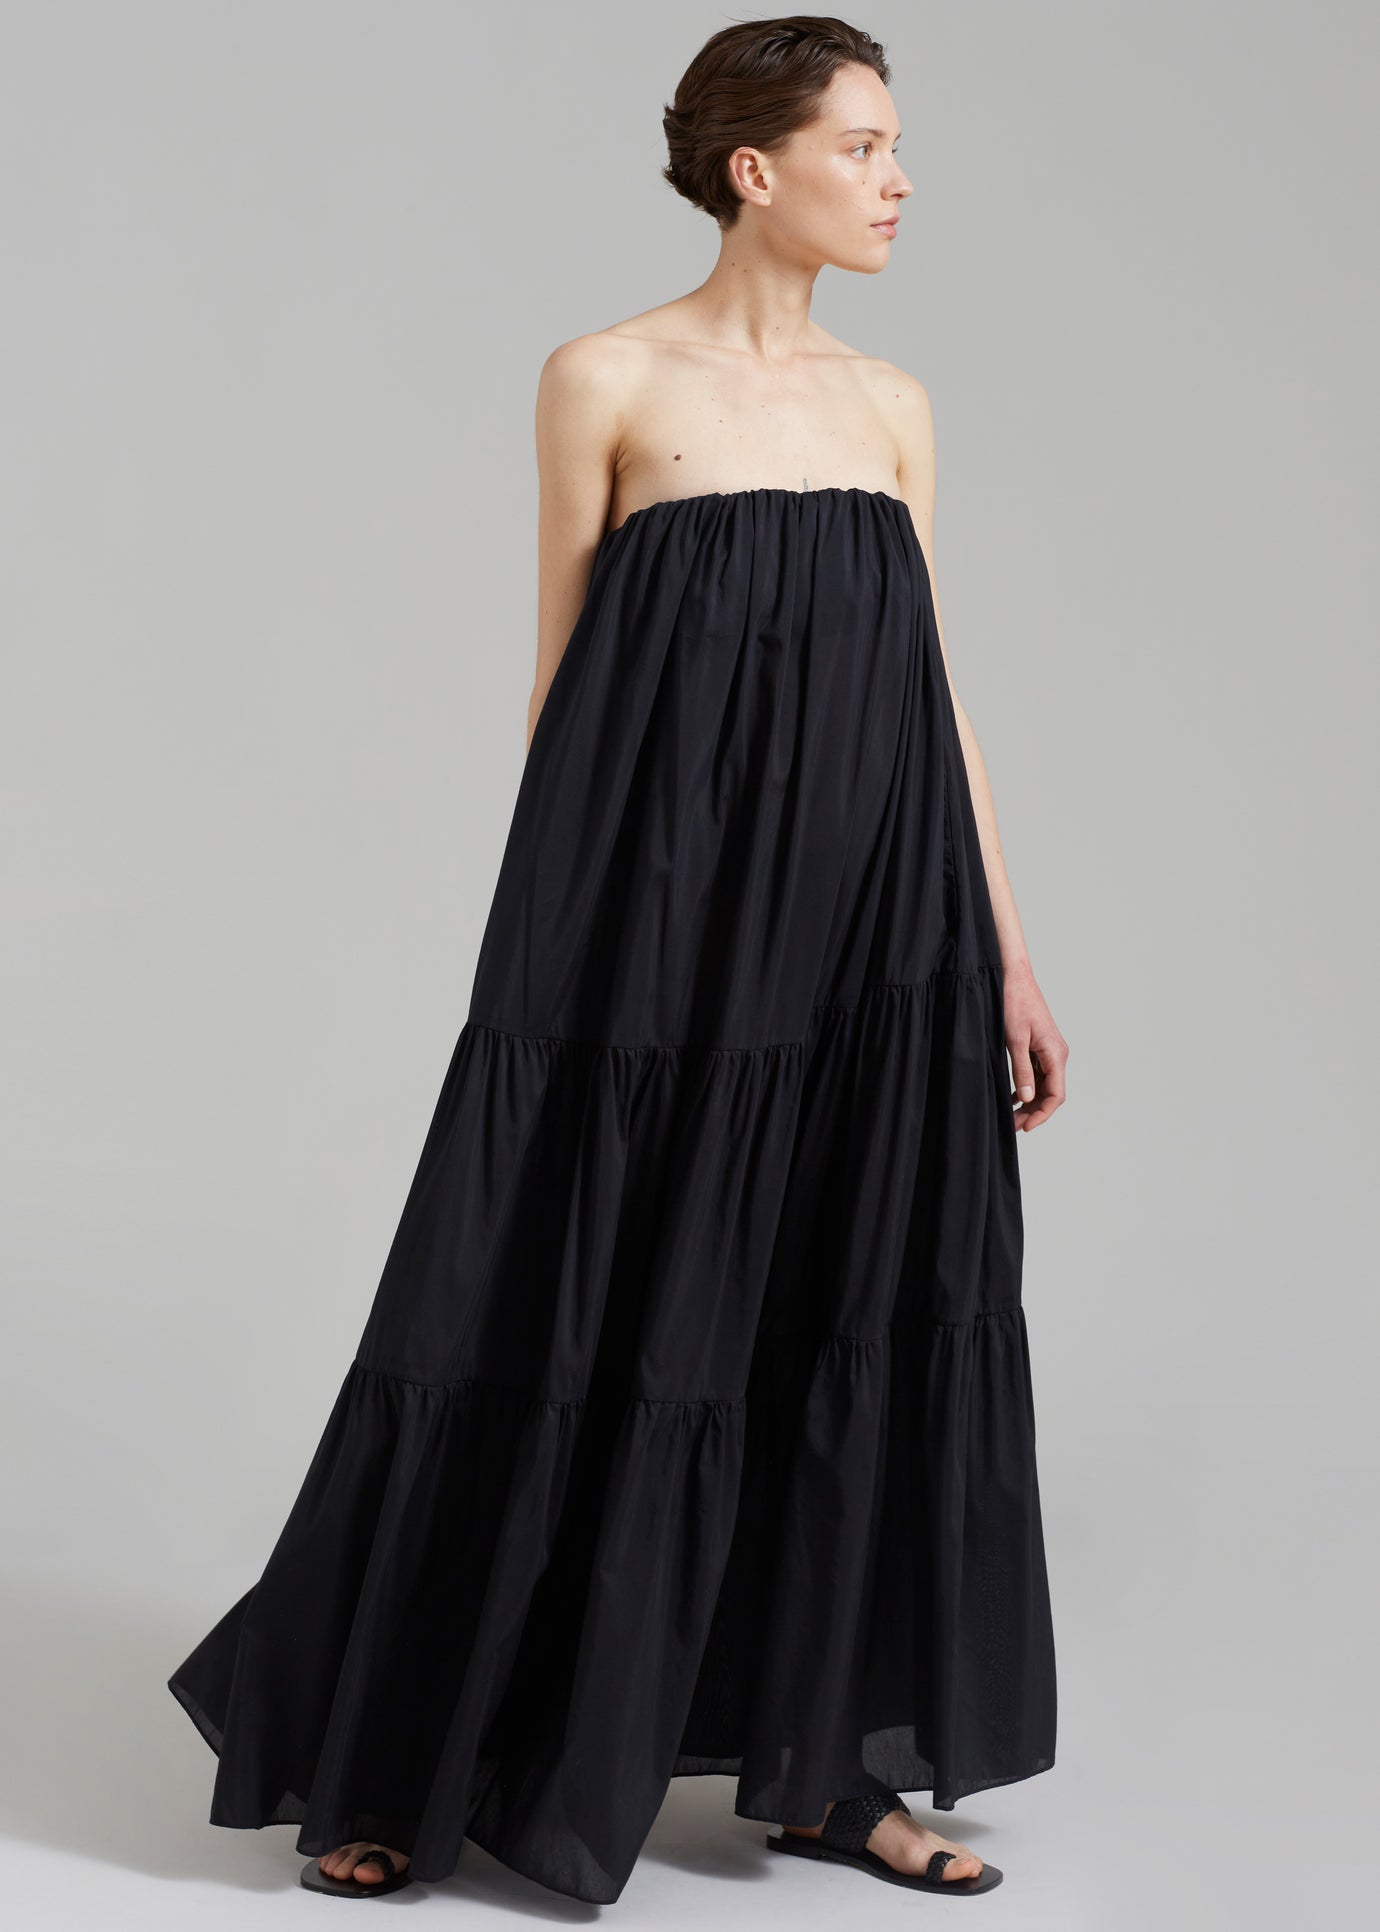 Matteau Voluminous Strapless Tiered Dress - Black